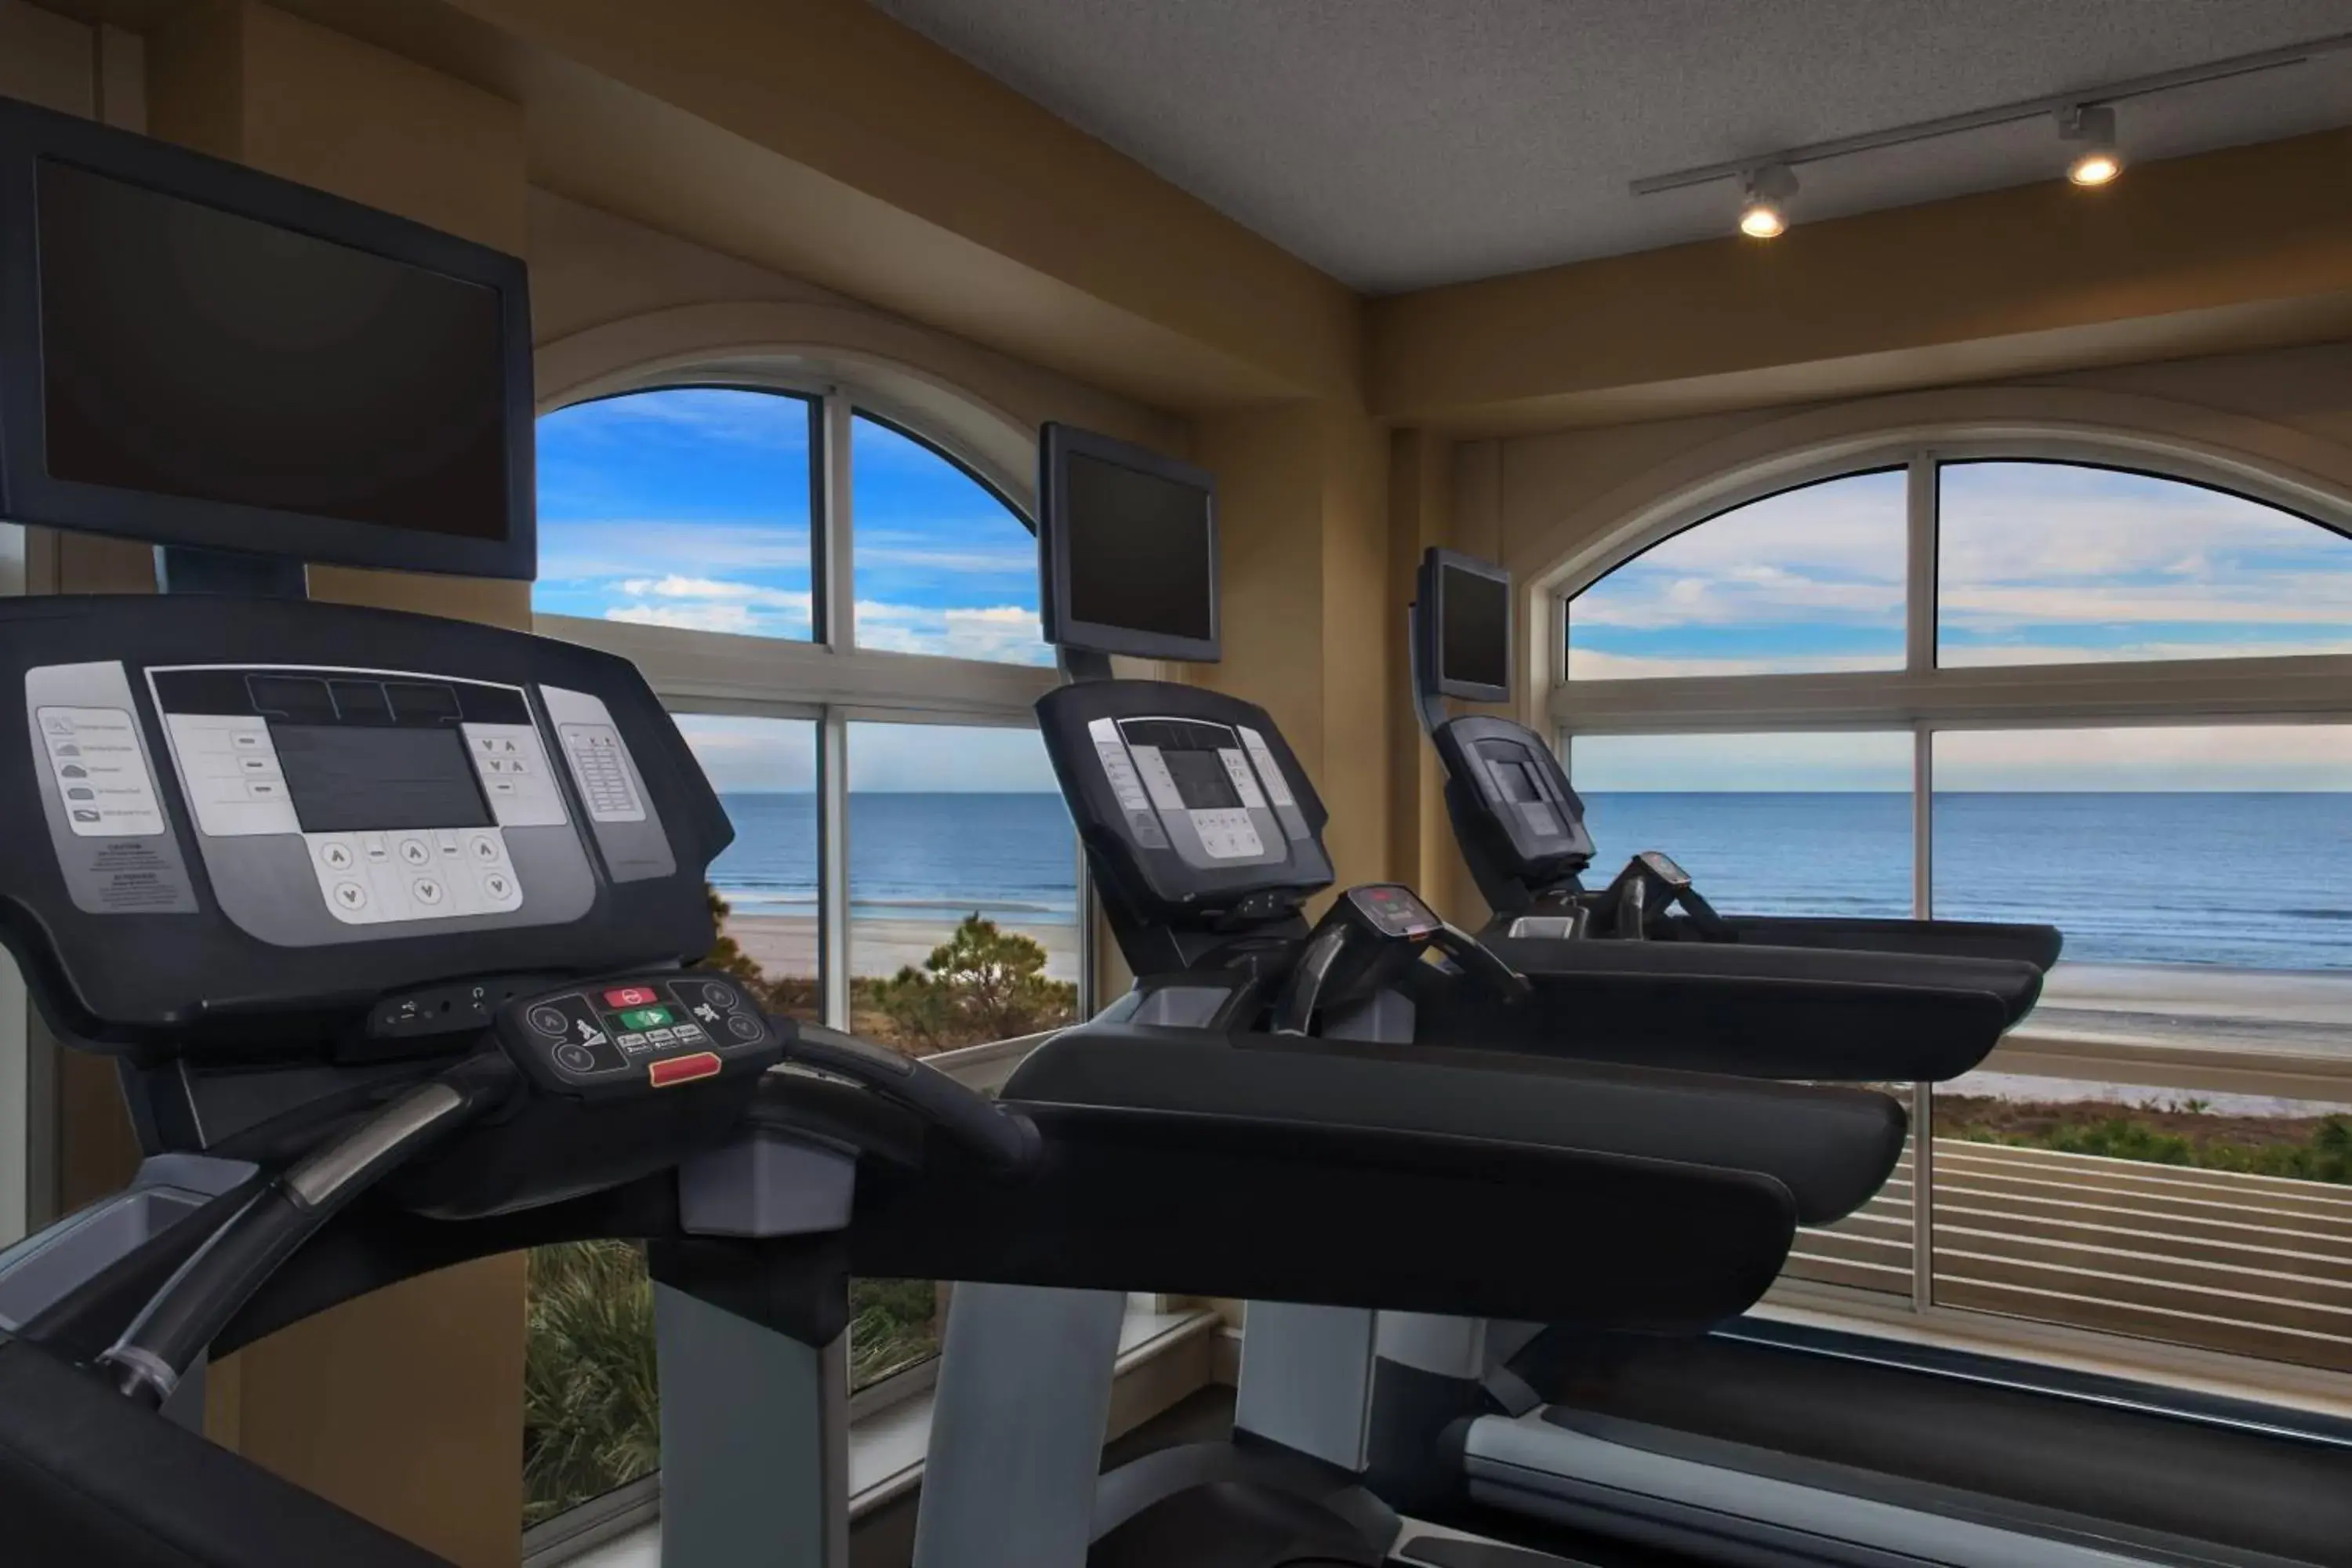 Fitness centre/facilities, Fitness Center/Facilities in Marriott's Grande Ocean